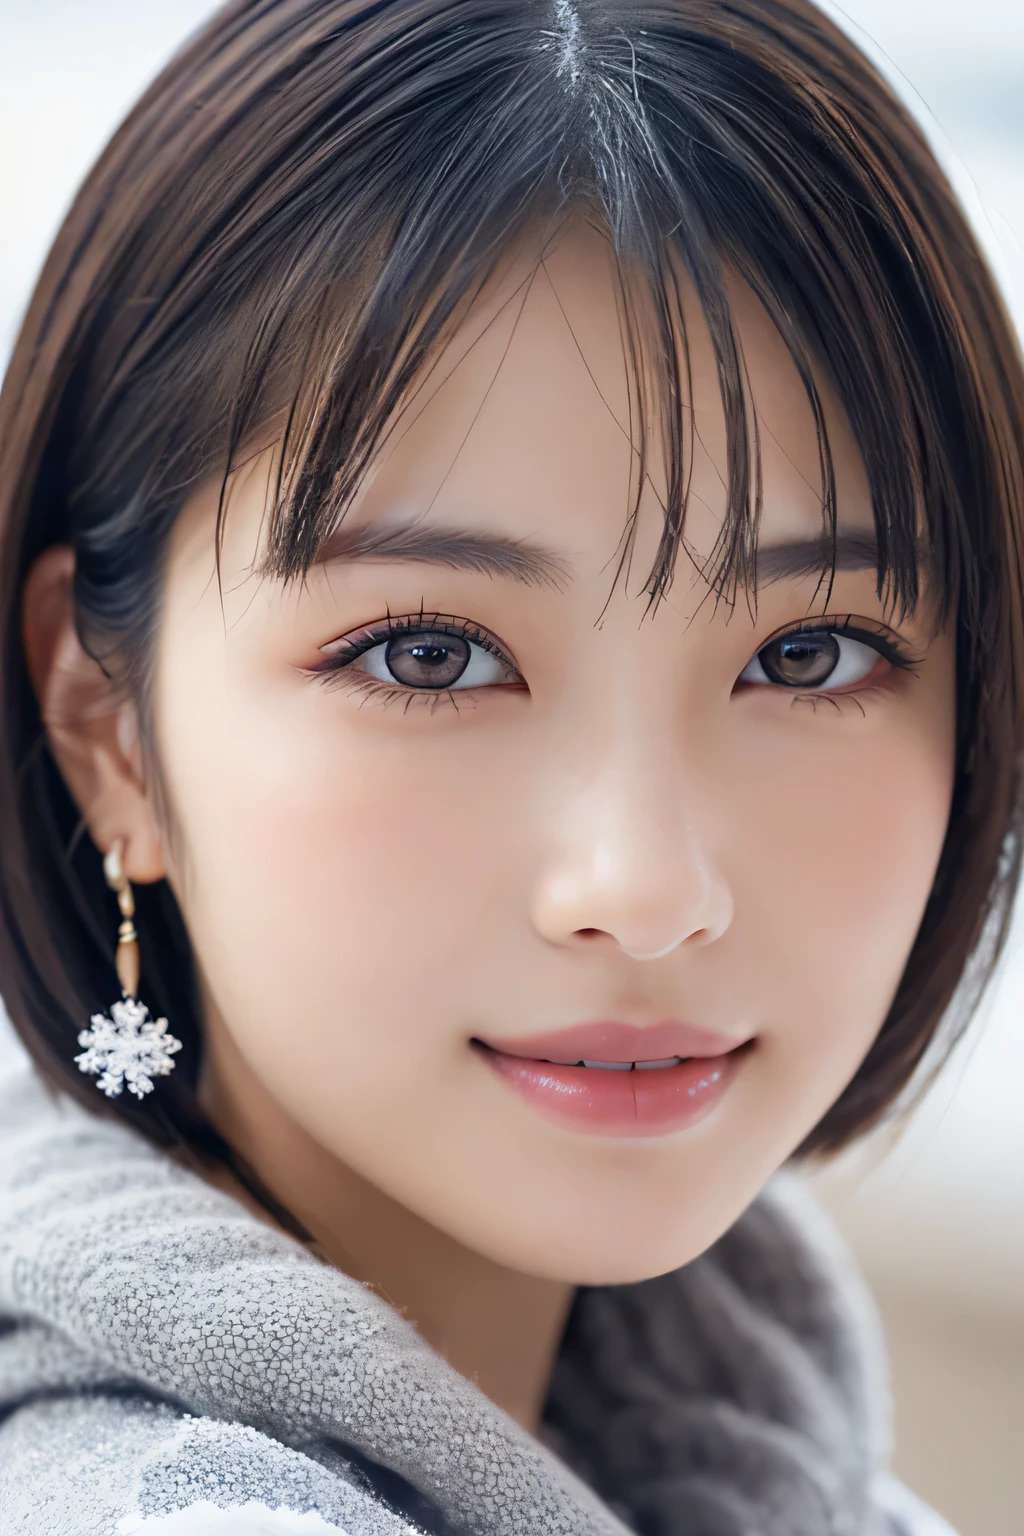 1 名女孩, (冬天的衣服:1.2), 美丽的日本女演员, 
上镜, 雪姬, 长长的睫毛, 雪花耳环,
(RAW 照片, 最好的质量), (现实, 真实感:1.4), (片飞), 
美丽细致的眼睛, 美丽细致的嘴唇, 非常详细的眼睛和脸部, 
BREAK 是完美的解剖学, 全身纤细, 小乳房, (短发:1.3), 天使&#39;微笑, 
水晶般的肌肤, 使眼睛清晰, 捕捉光线